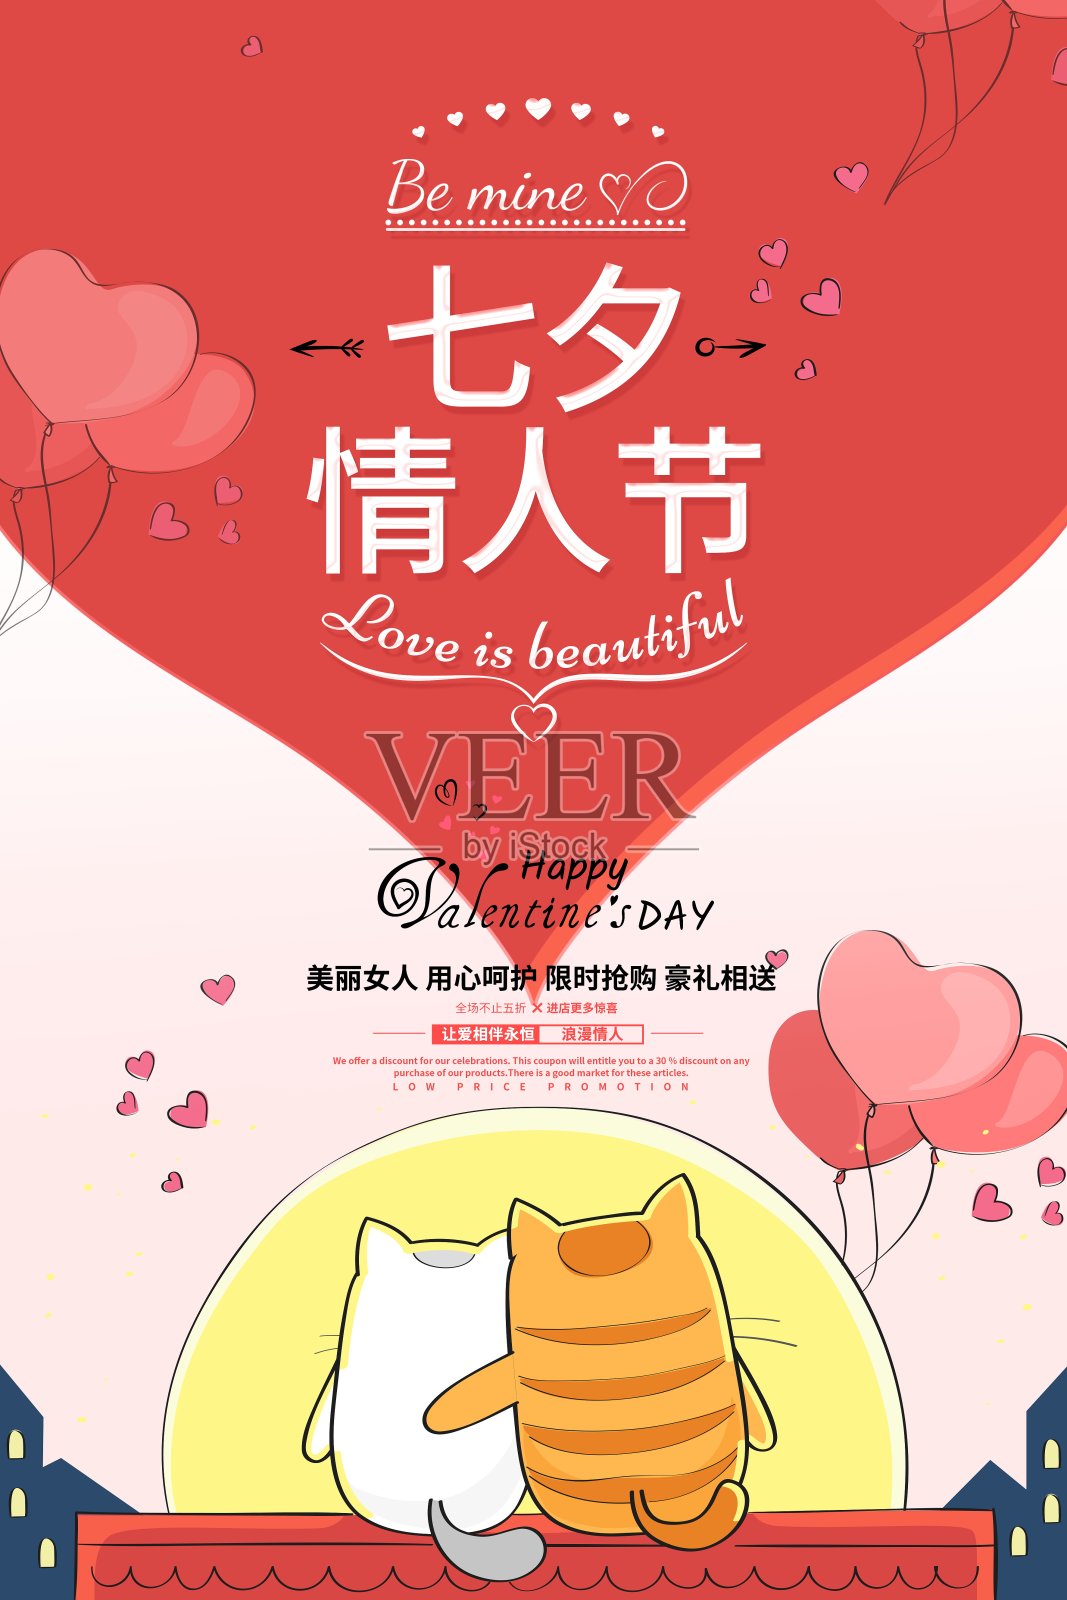 卡通七夕情人节节日促销海报设计模板素材